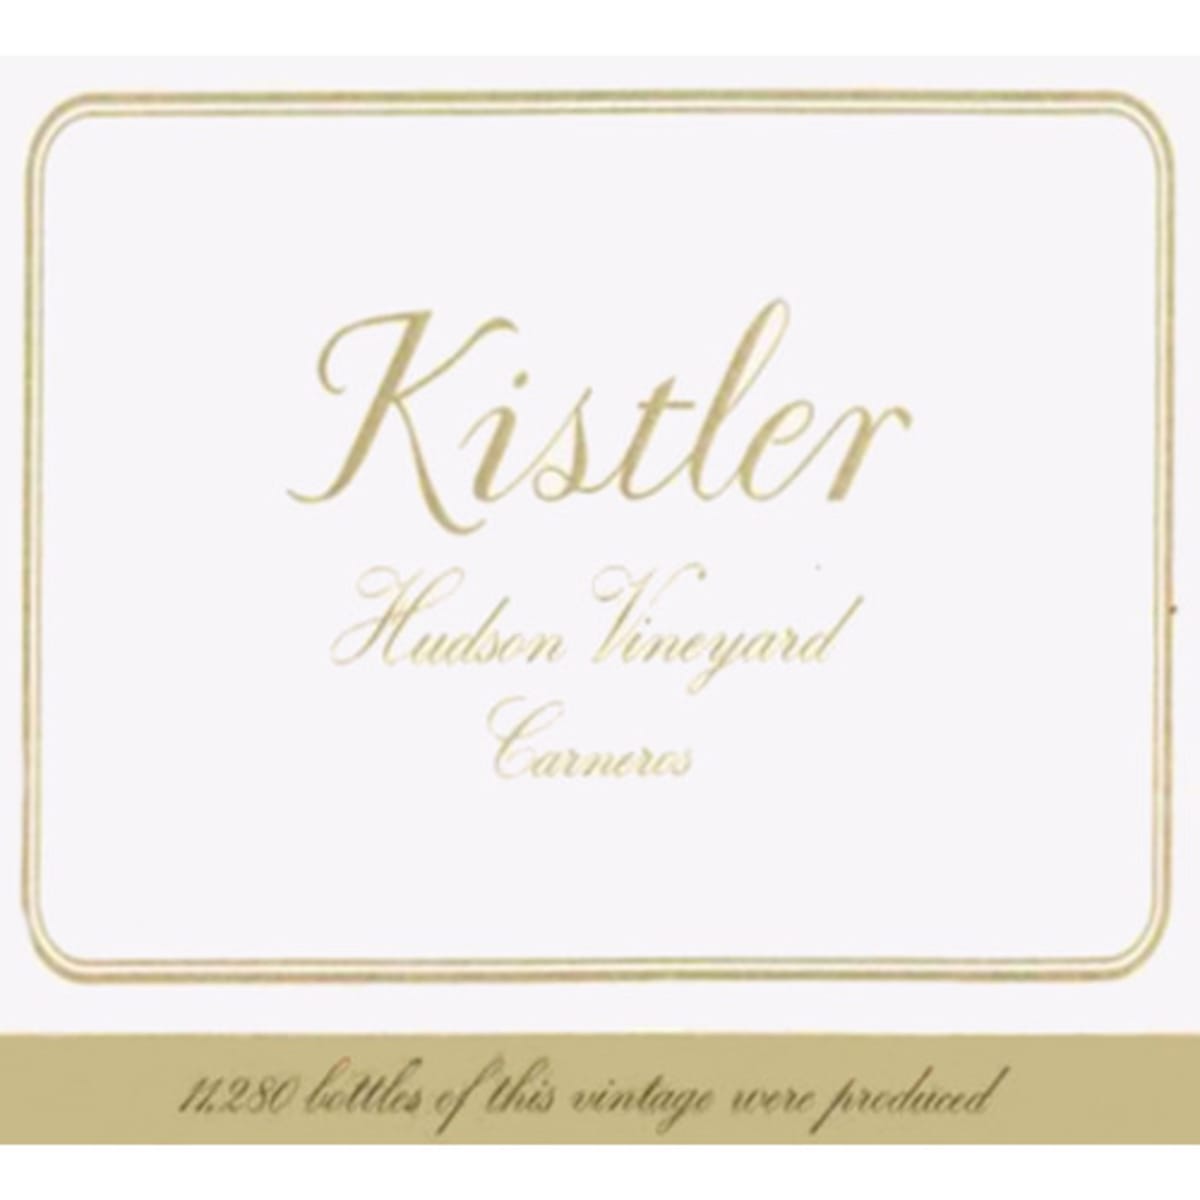 Kistler Vineyards Hudson Chardonnay 2006 Front Label